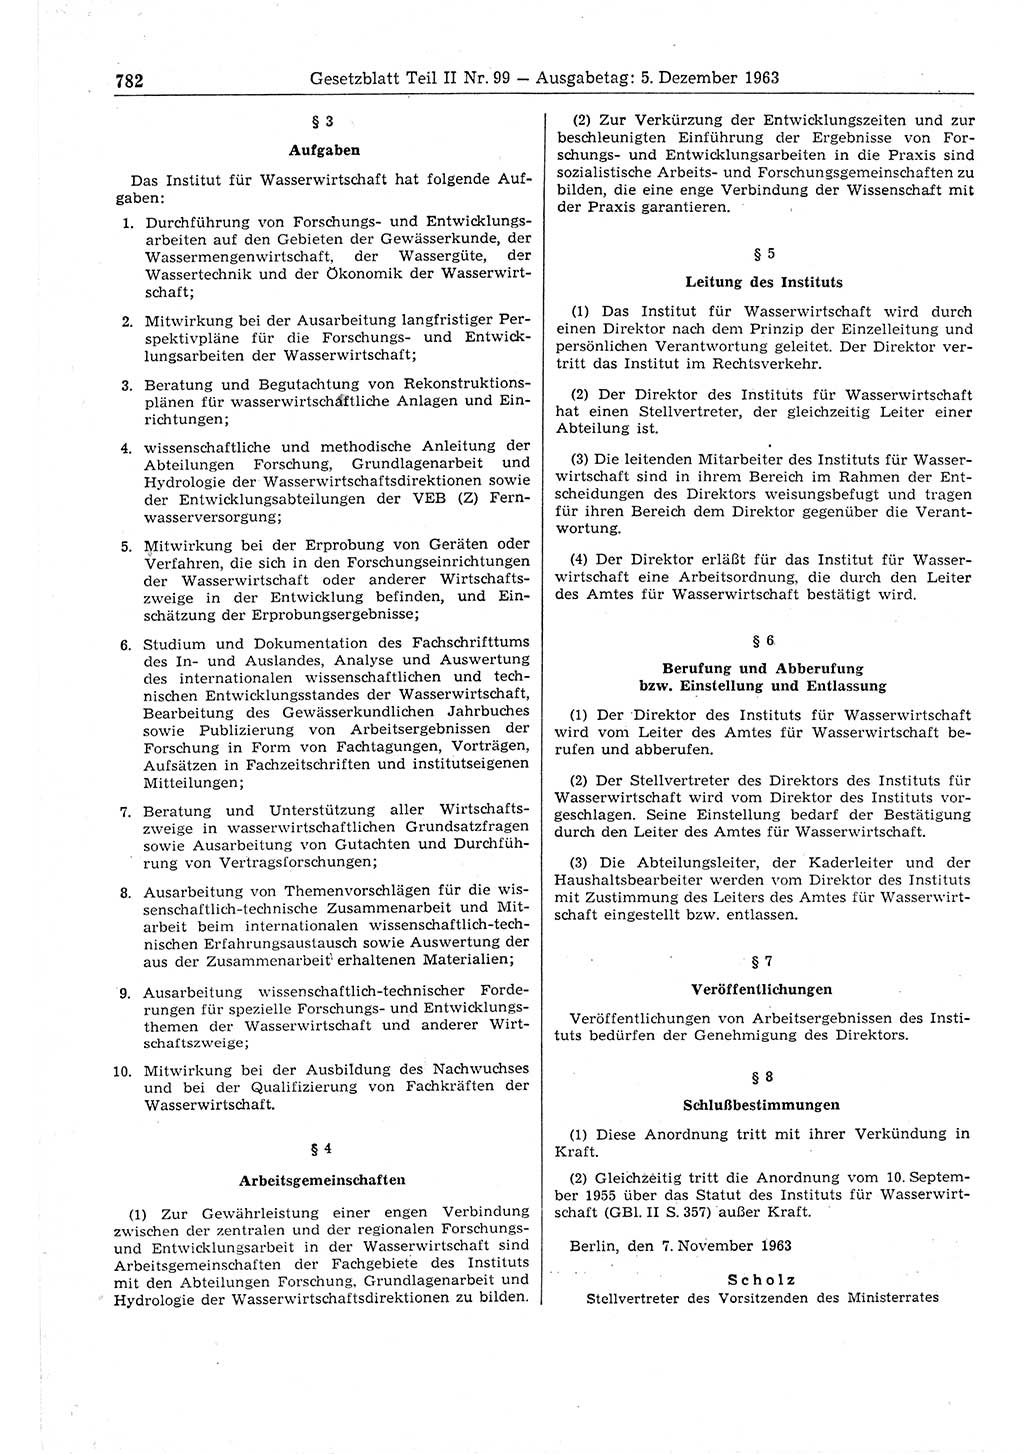 Gesetzblatt (GBl.) der Deutschen Demokratischen Republik (DDR) Teil ⅠⅠ 1963, Seite 782 (GBl. DDR ⅠⅠ 1963, S. 782)